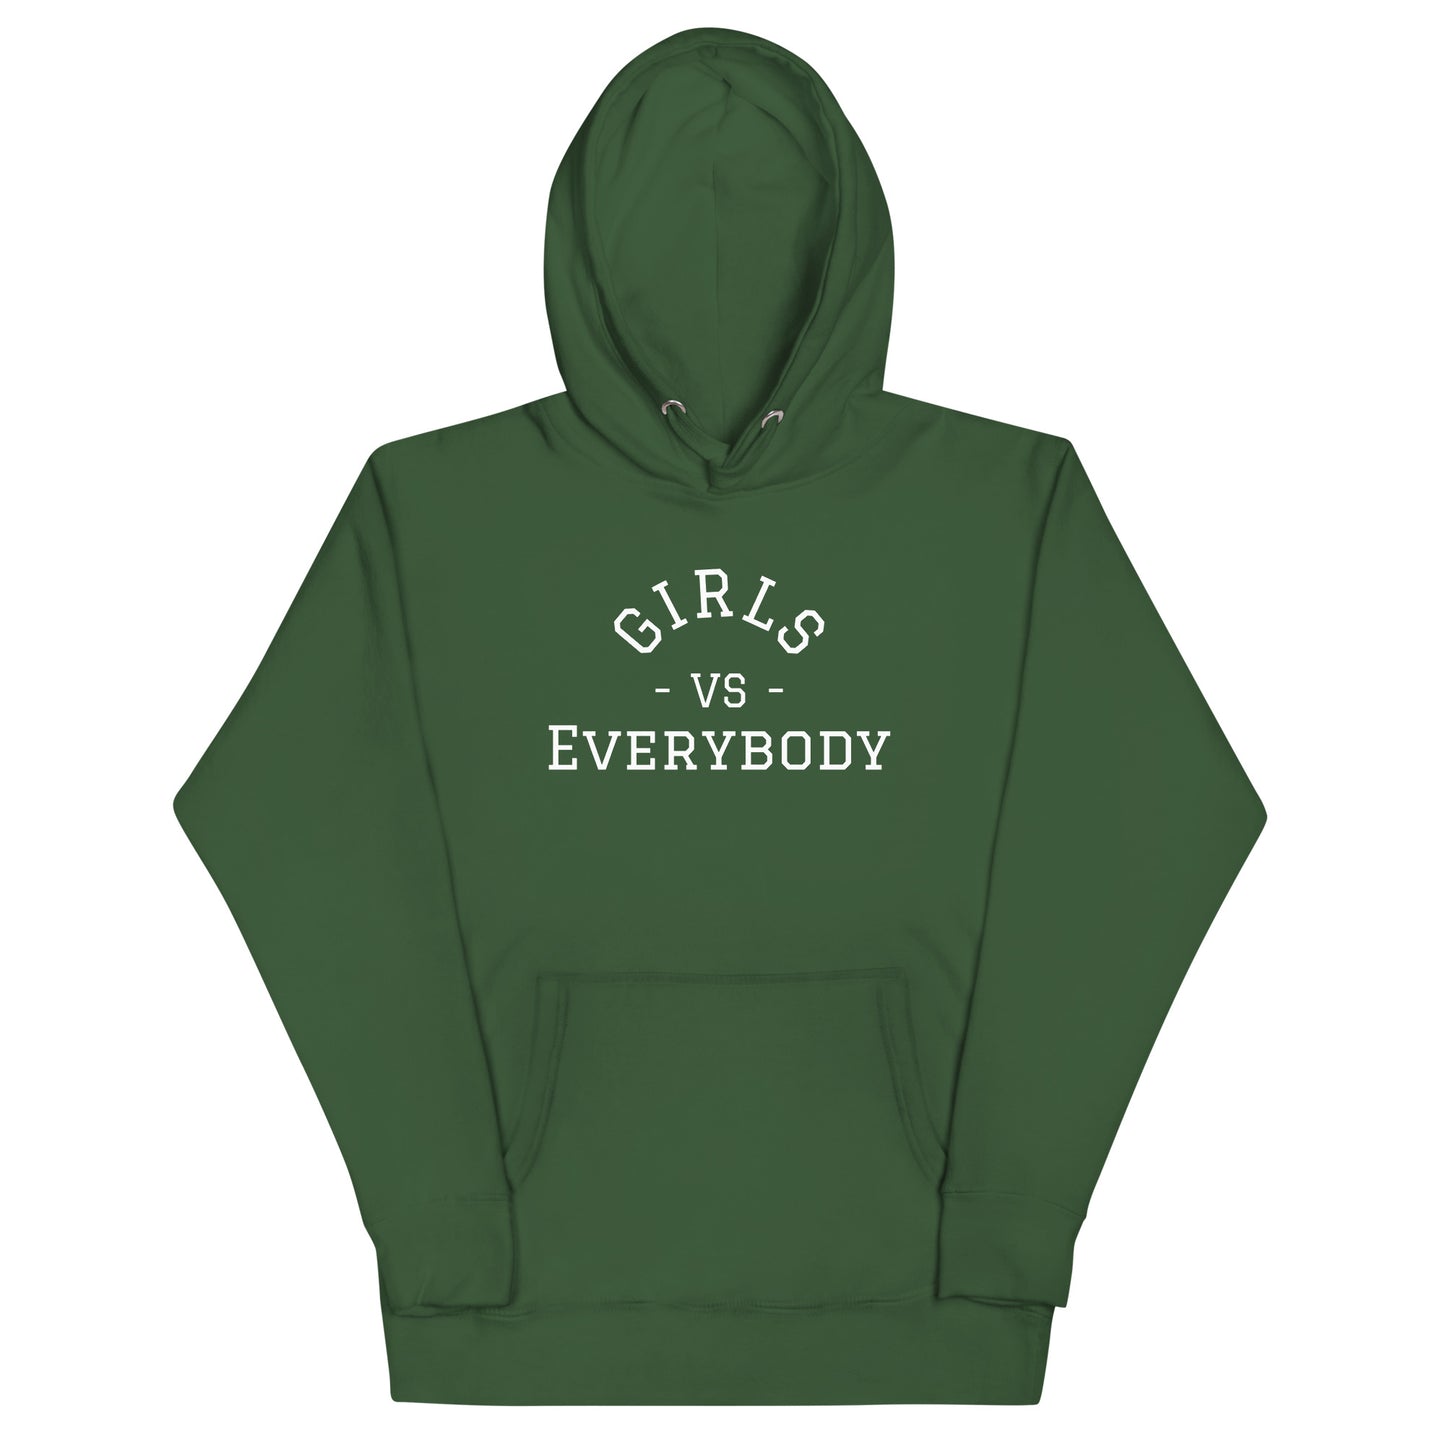 Women's green hoodie sweatshirt that says 'Girls VS Everybody'